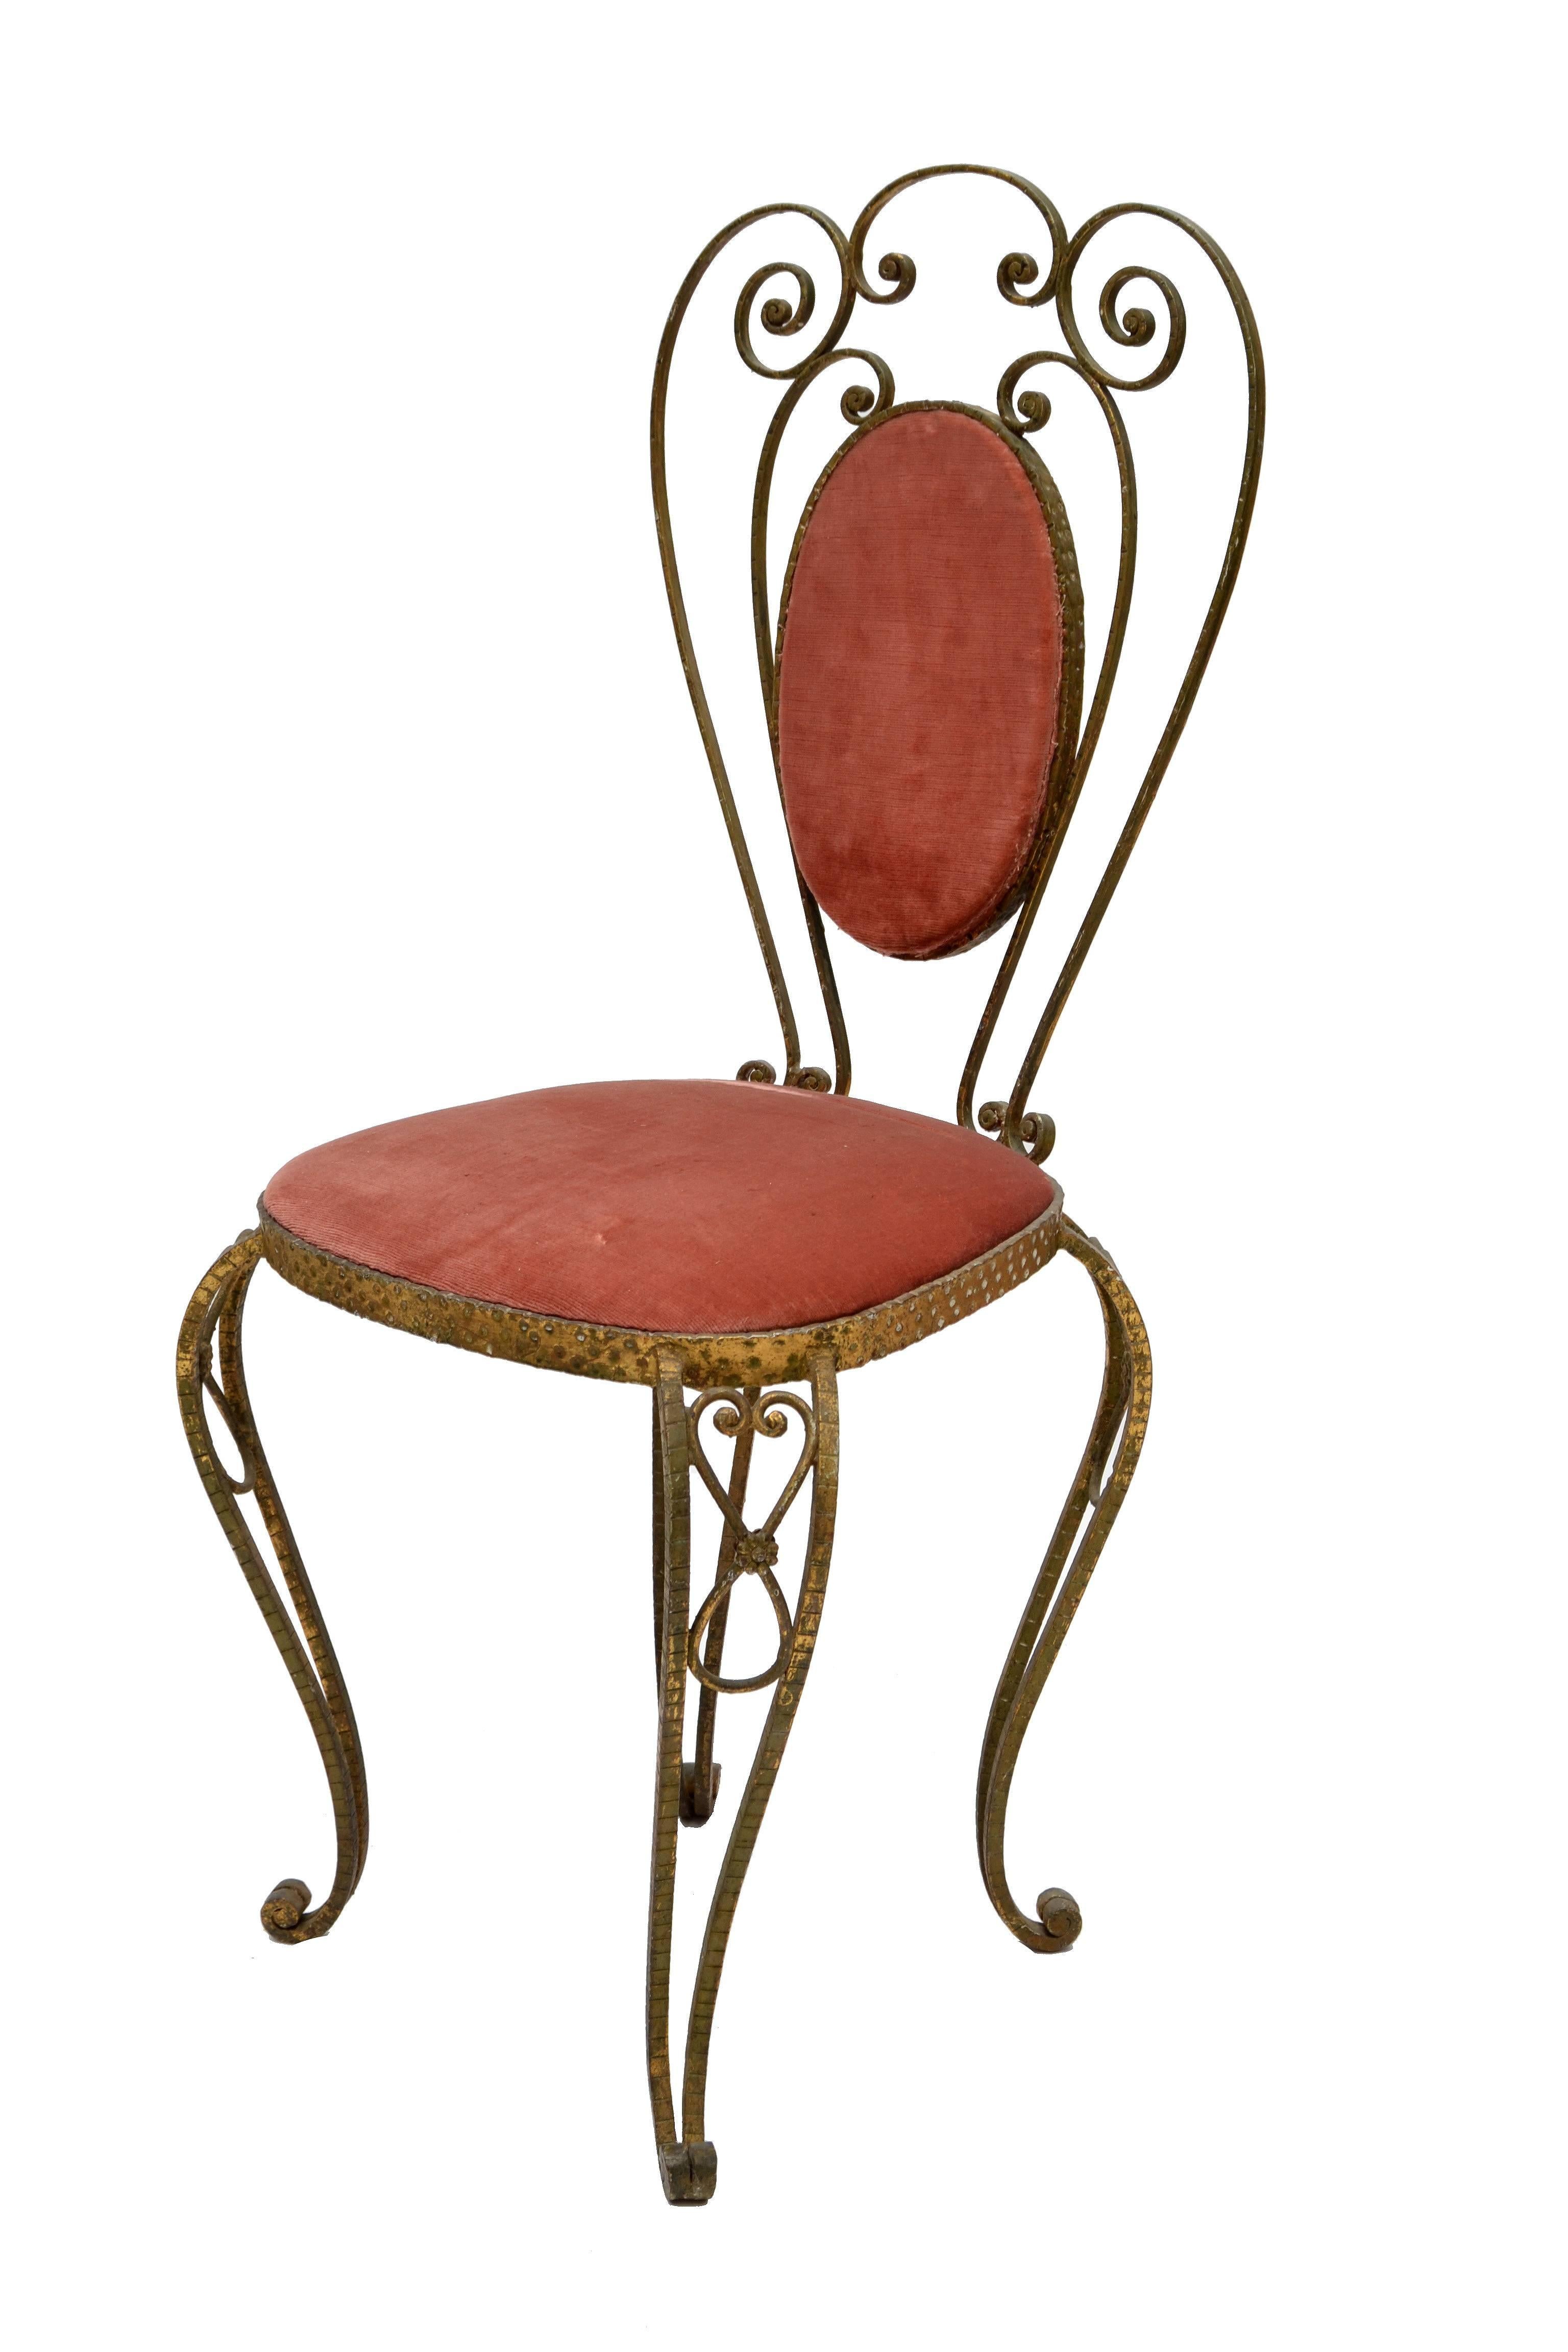 Fauteuil fantaisiste de style Art déco italien en fer forgé martelé à la main en finition dorée avec un revêtement en velours rose par Pier Luigi Colli.
En bon état vintage, nous recommandons de faire tapisser la chaise à neuf.

     
   